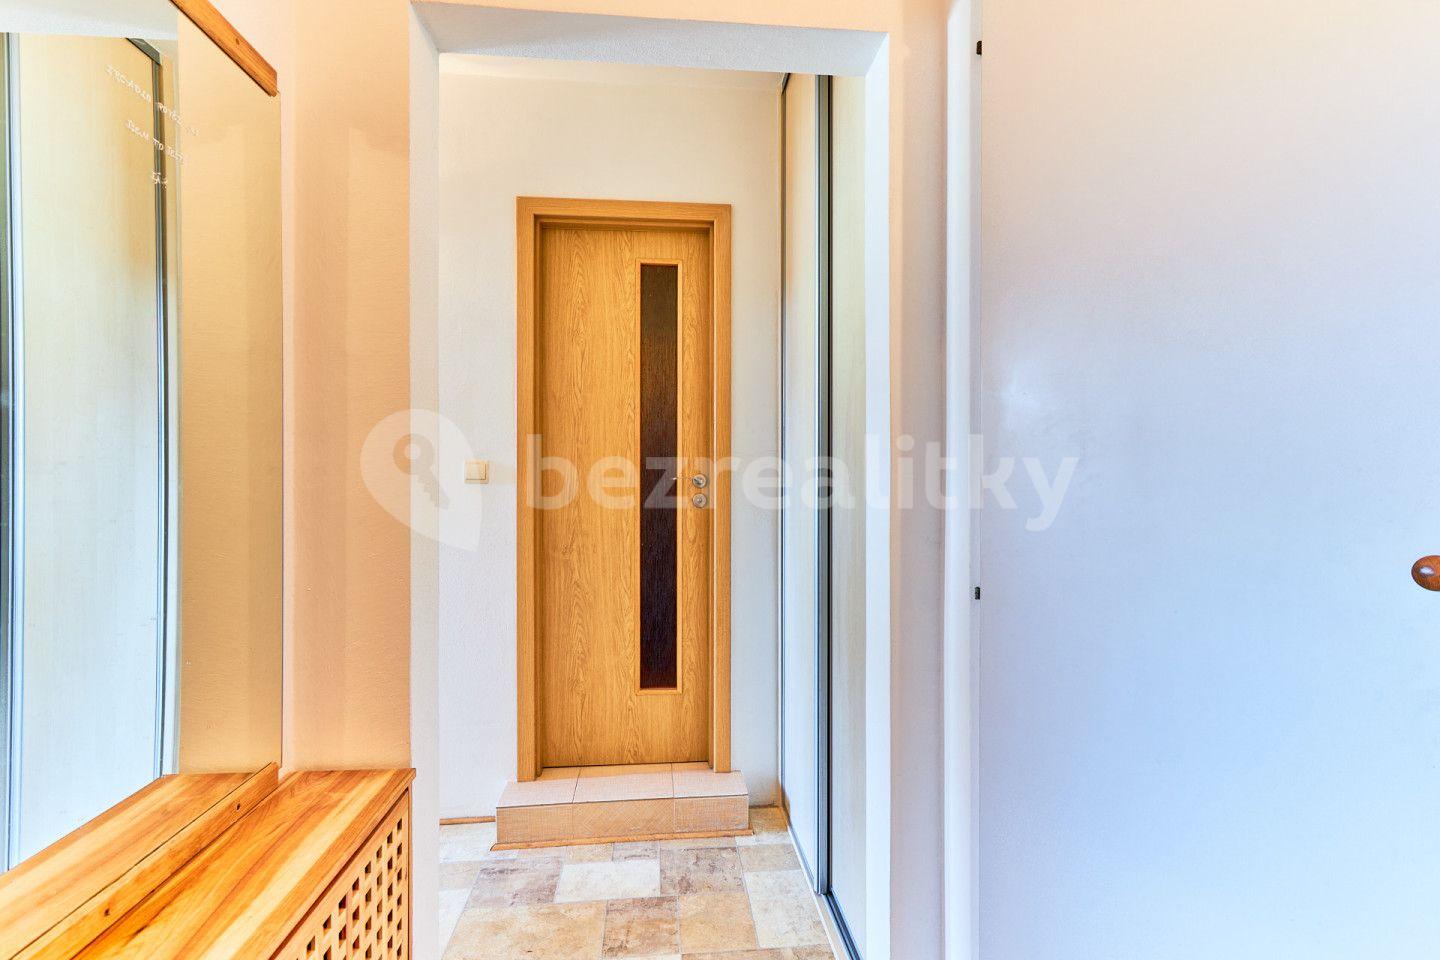 2 bedroom flat for sale, 58 m², B. Němcové, Protivín, Jihočeský Region